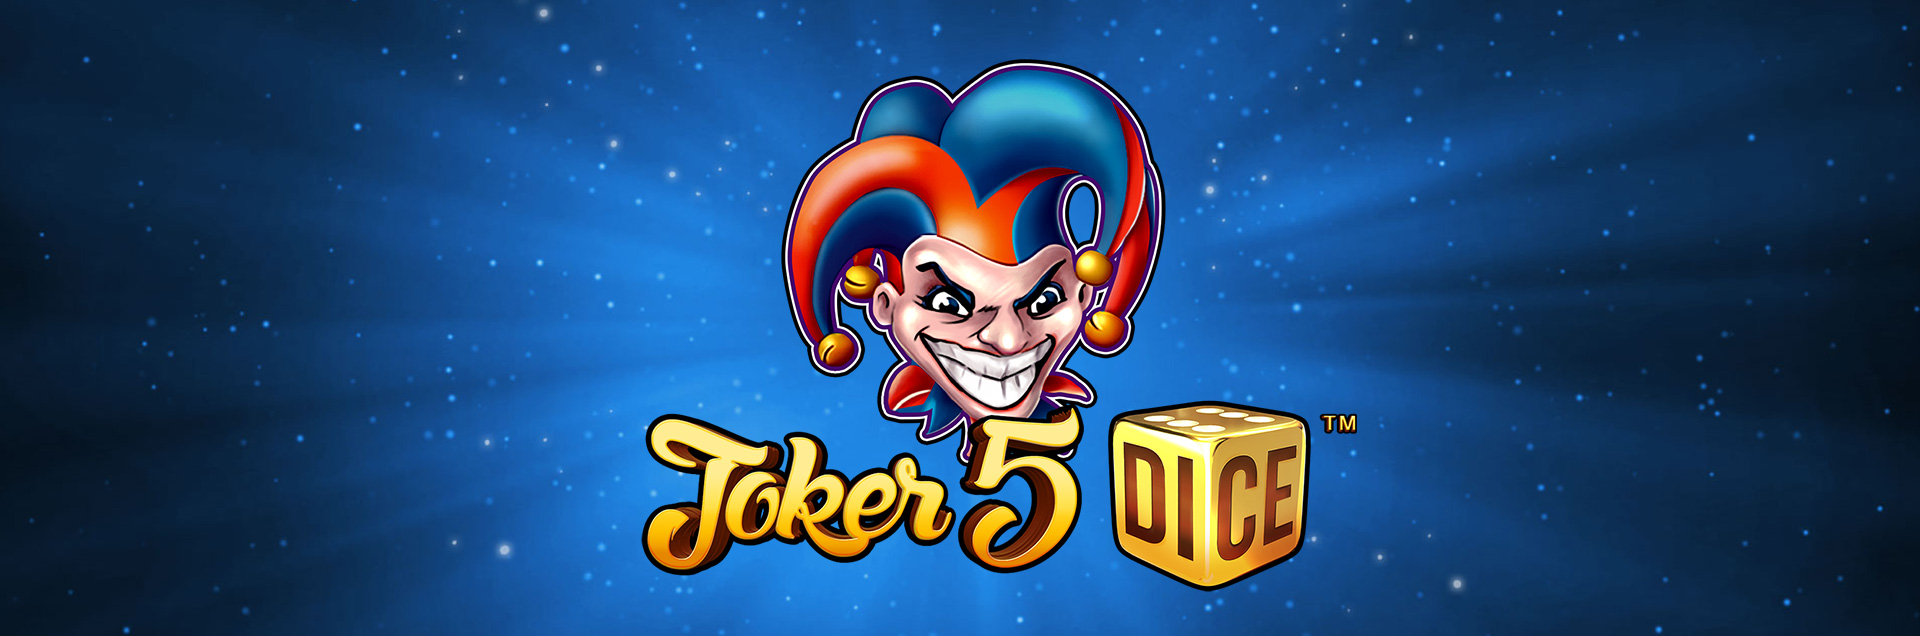 Joker 5 Dice header games